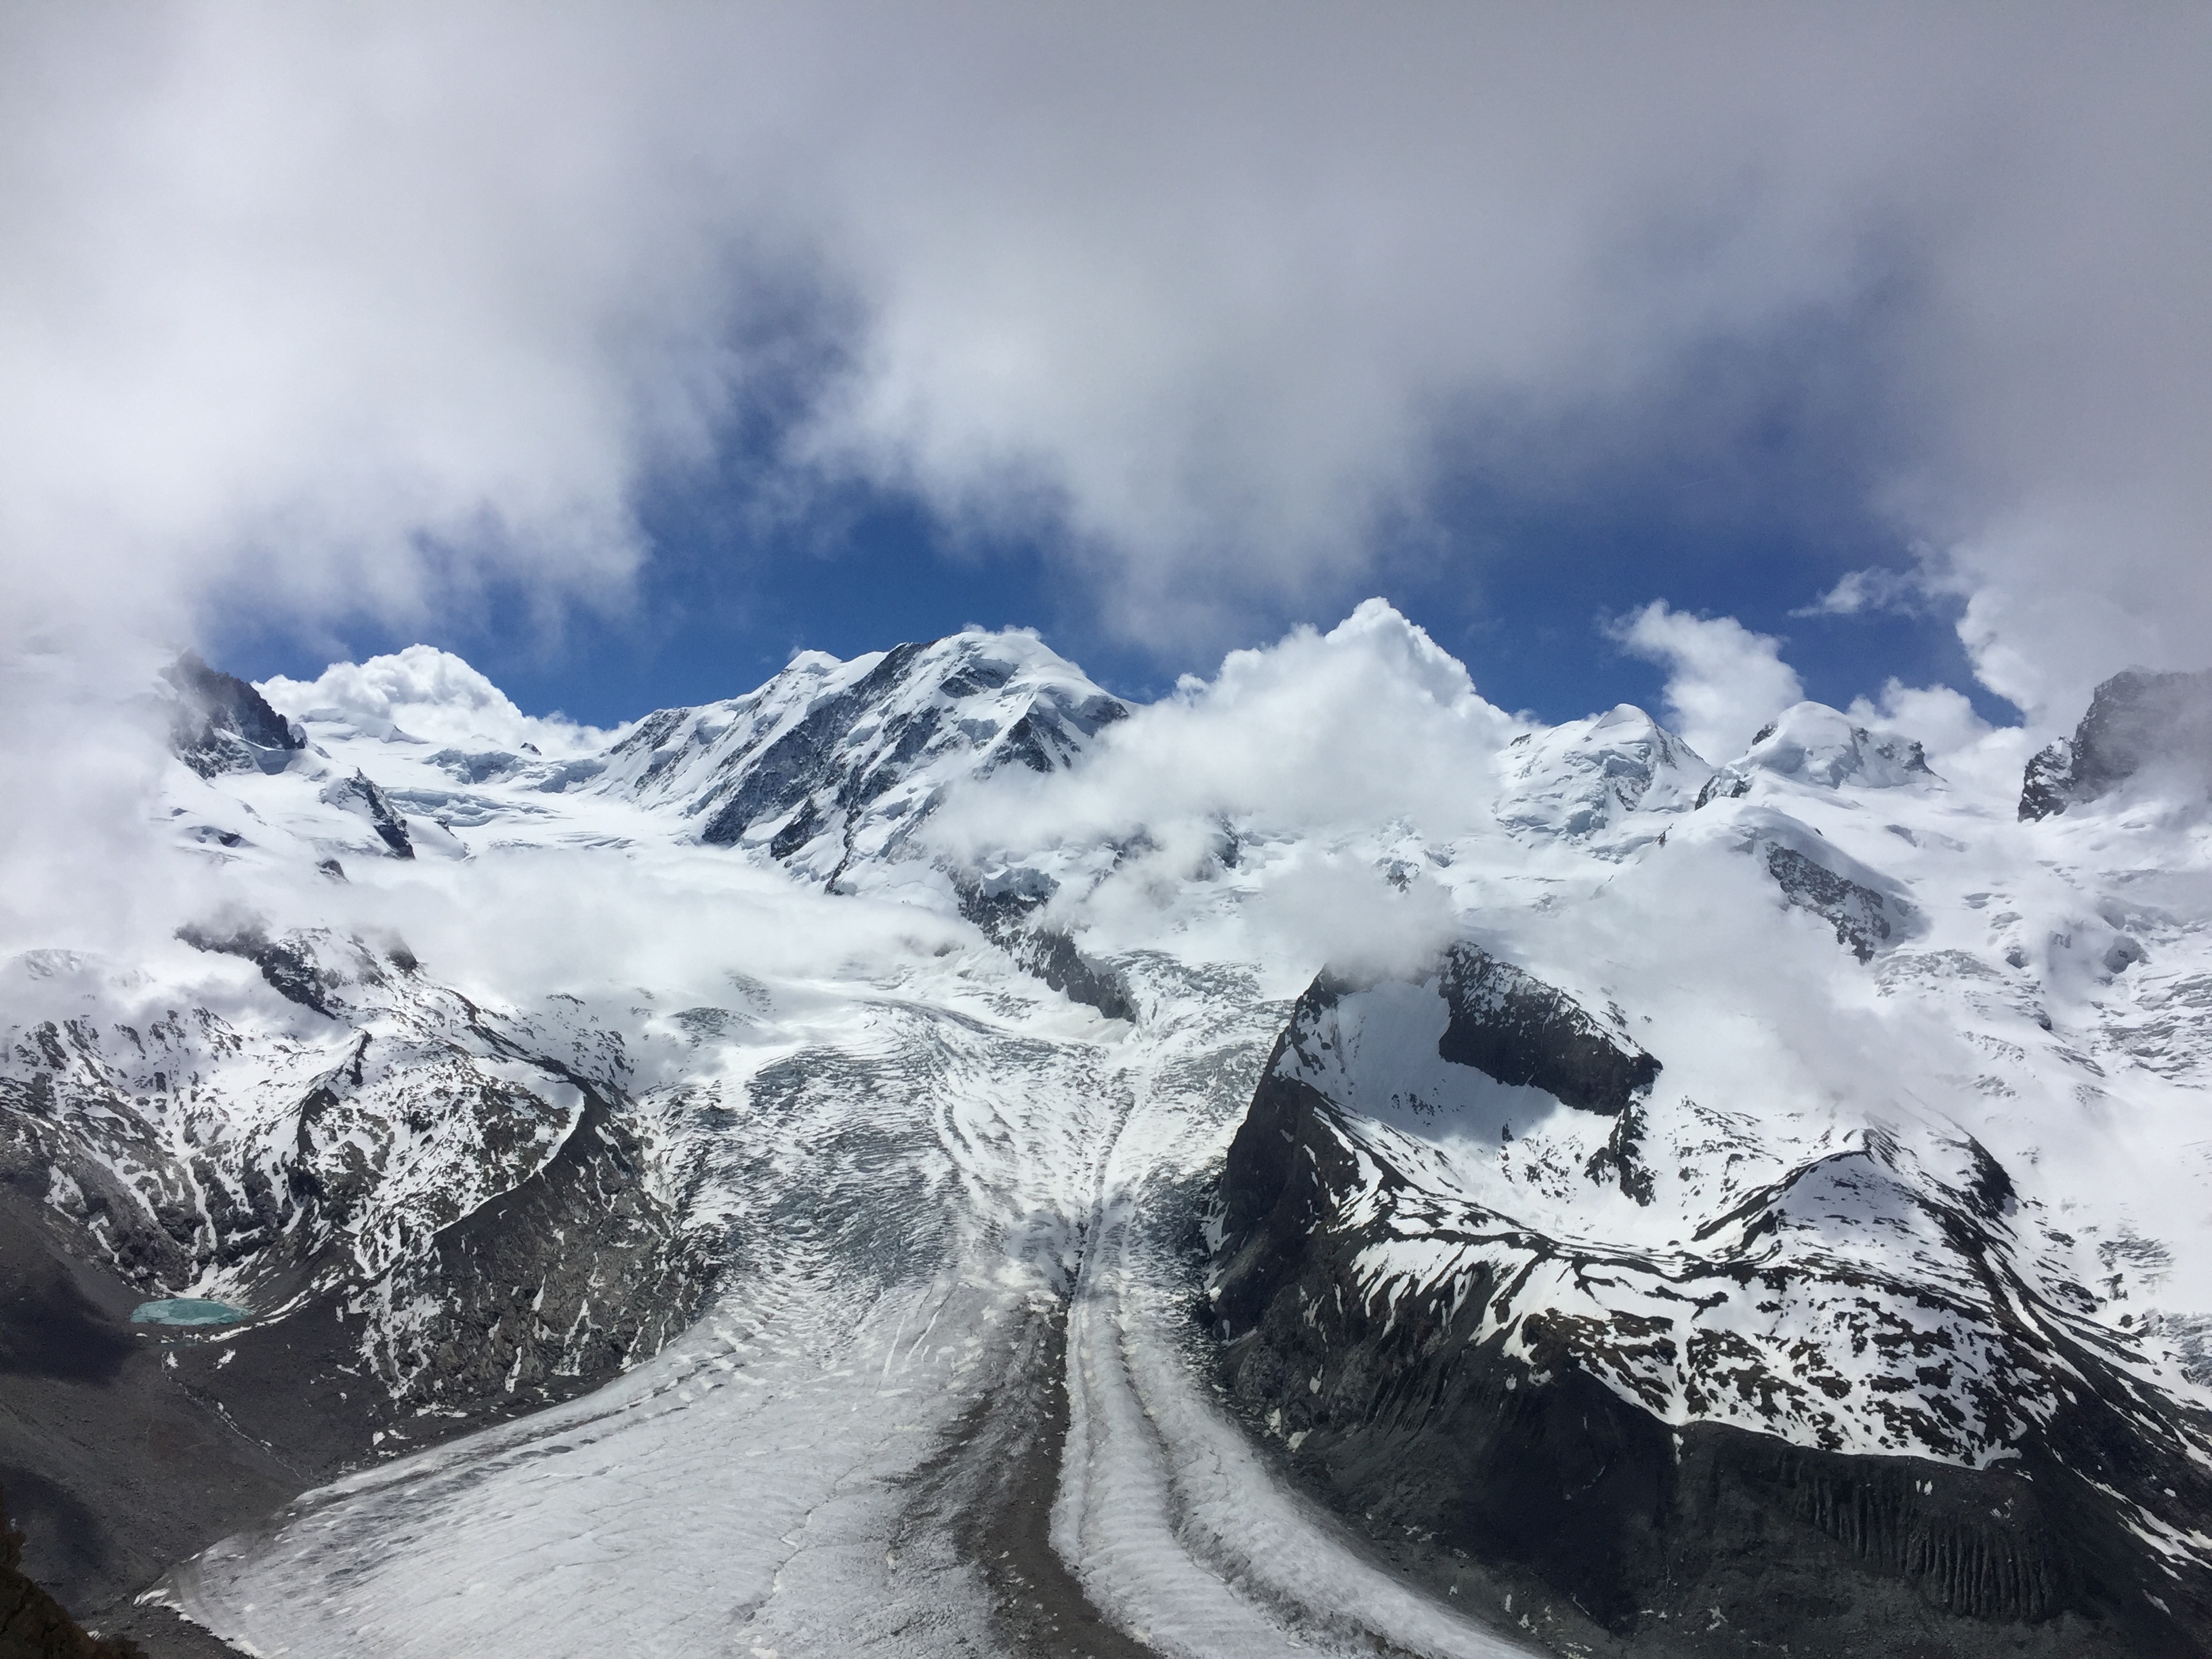 2017년에 대학친구들과 스위스 여행 중 고르너그라트(Gornergrat)에서 본 빙하